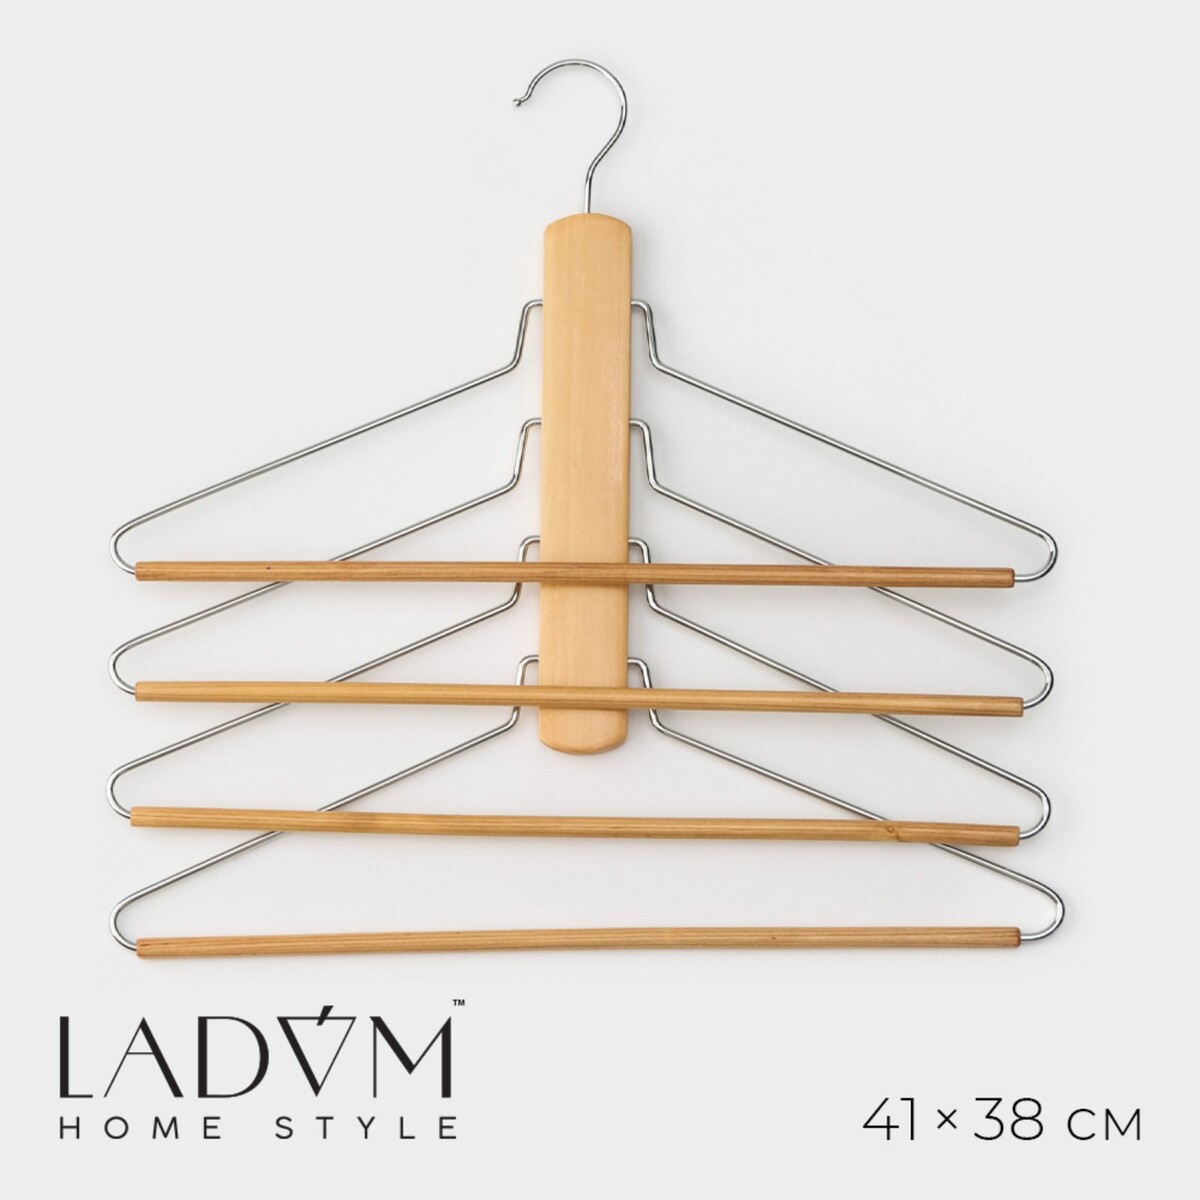 Плечики - вешалки органайзер для одежды многоуровневые ladо́m bois, 41×38 см, сорт а, цвет светлое дерево плечики вешалки для одежды ladо́m